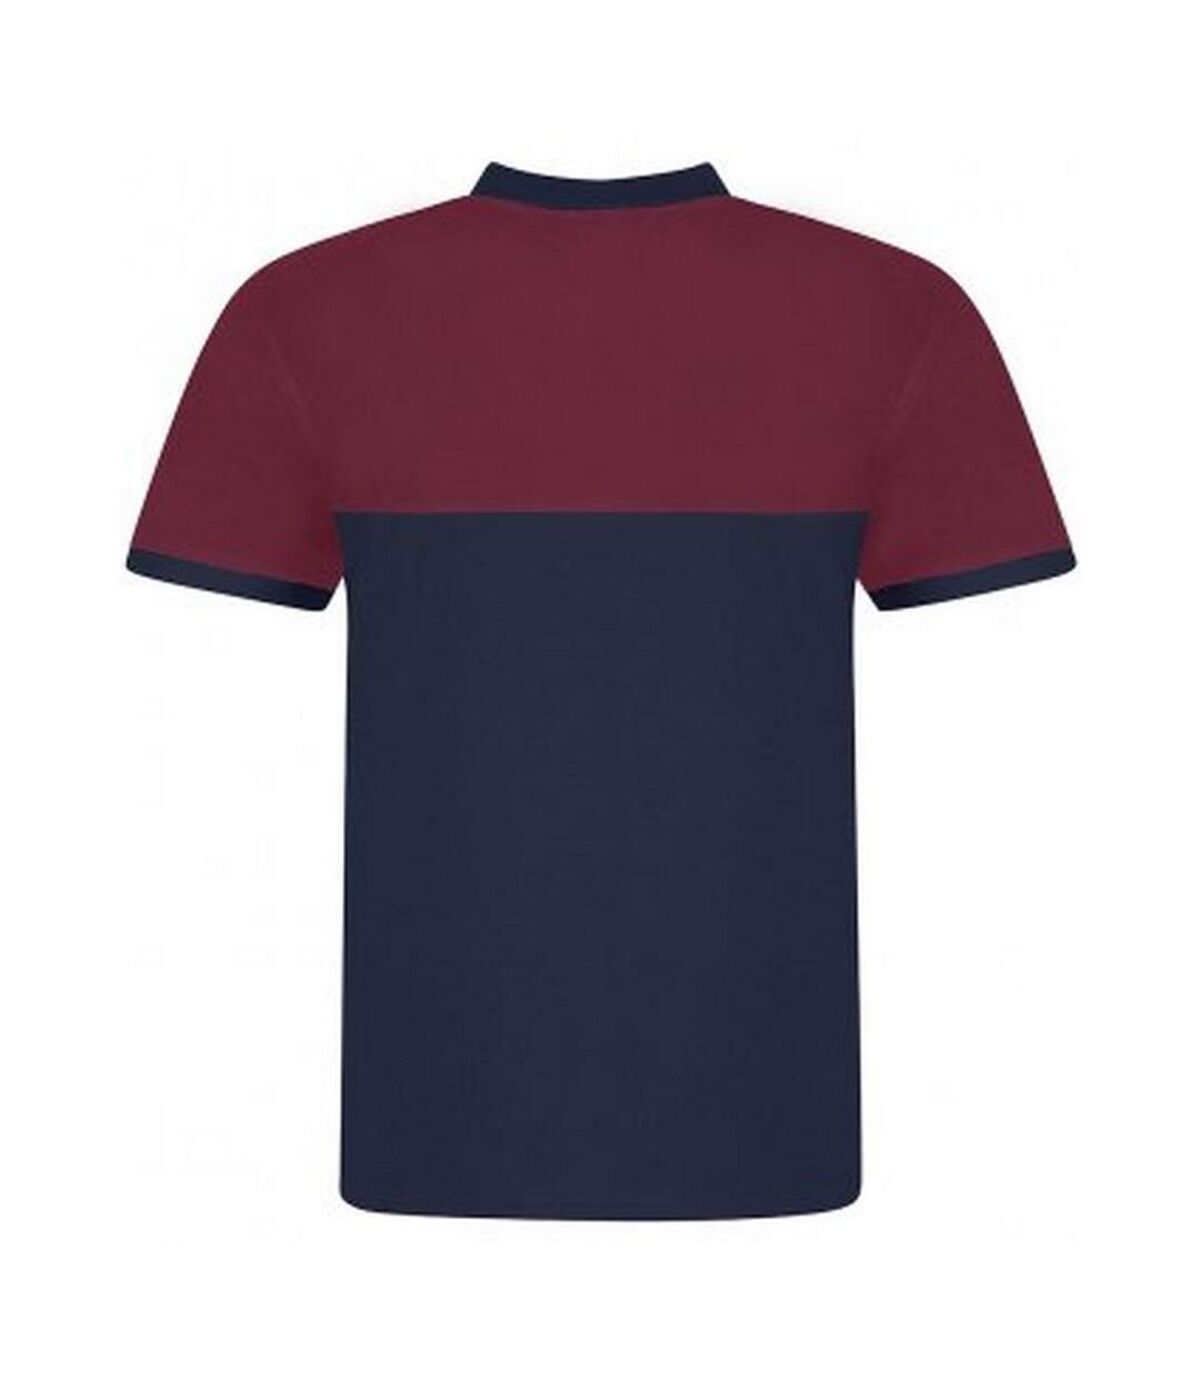 Awdis Mens Pique Colour Block Polo Shirt (Oxford Navy/Burgundy) - UTPC4132